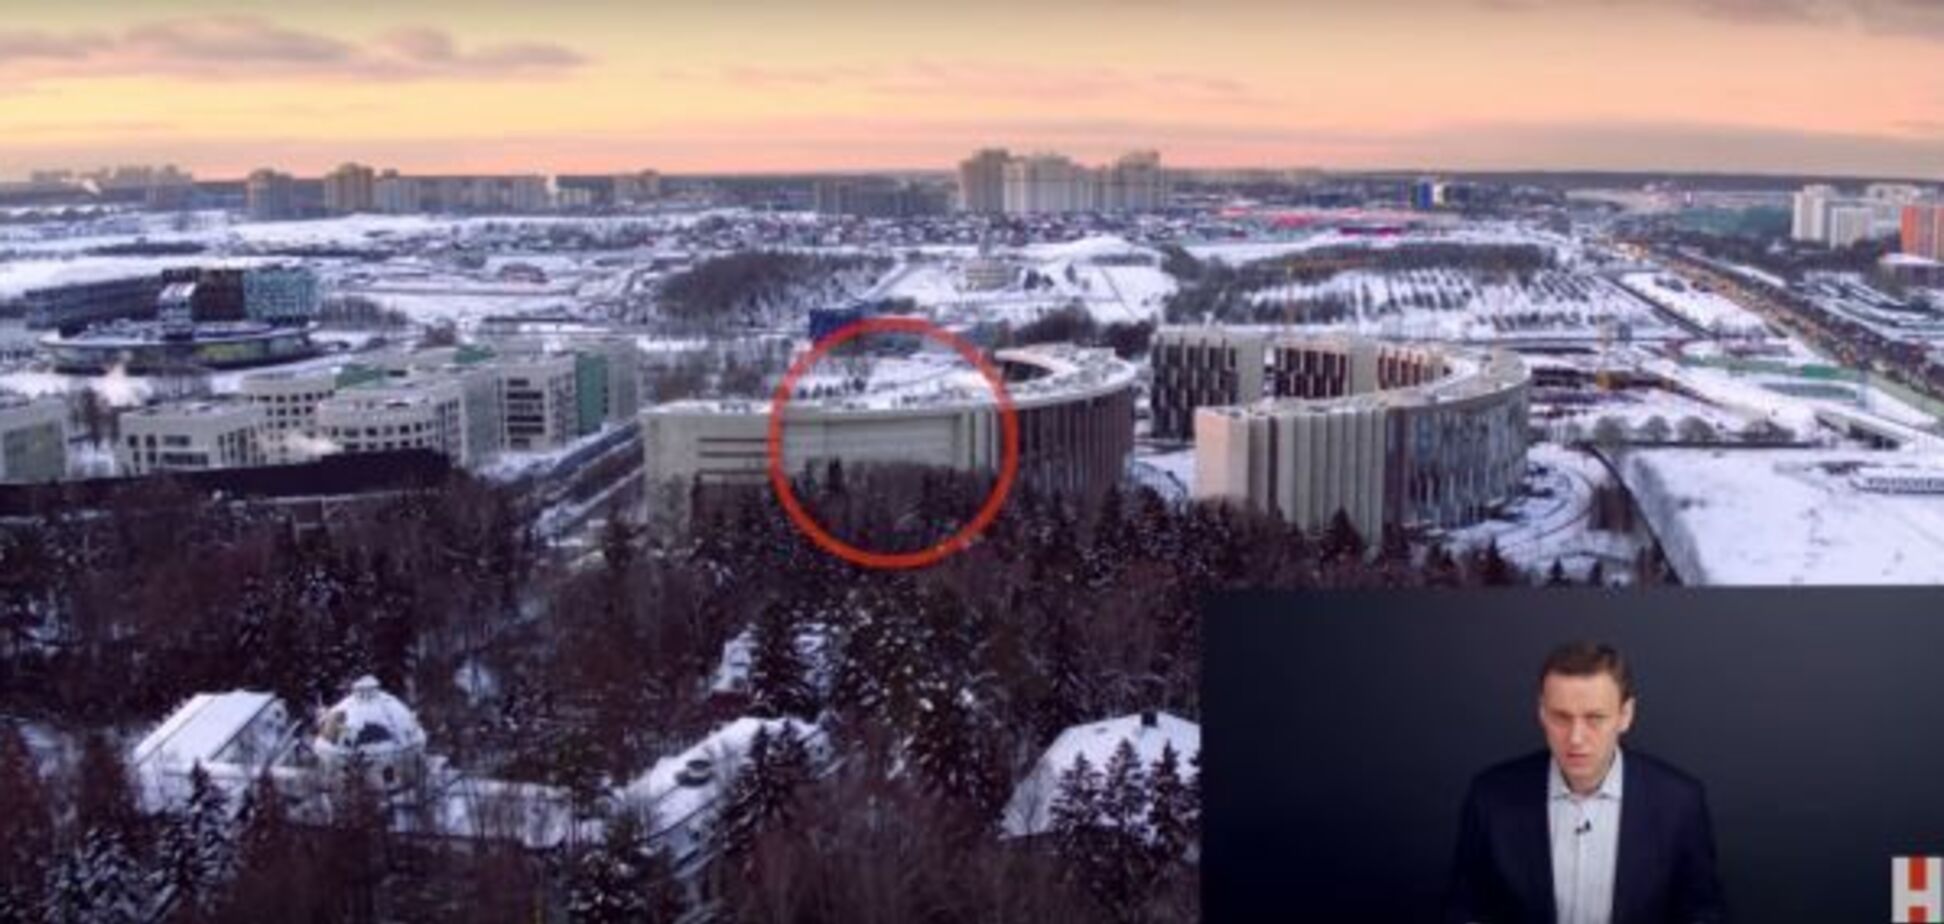 С глаз долой: в России людям замуровали окна, чтобы спрятать дачу зама Медведева